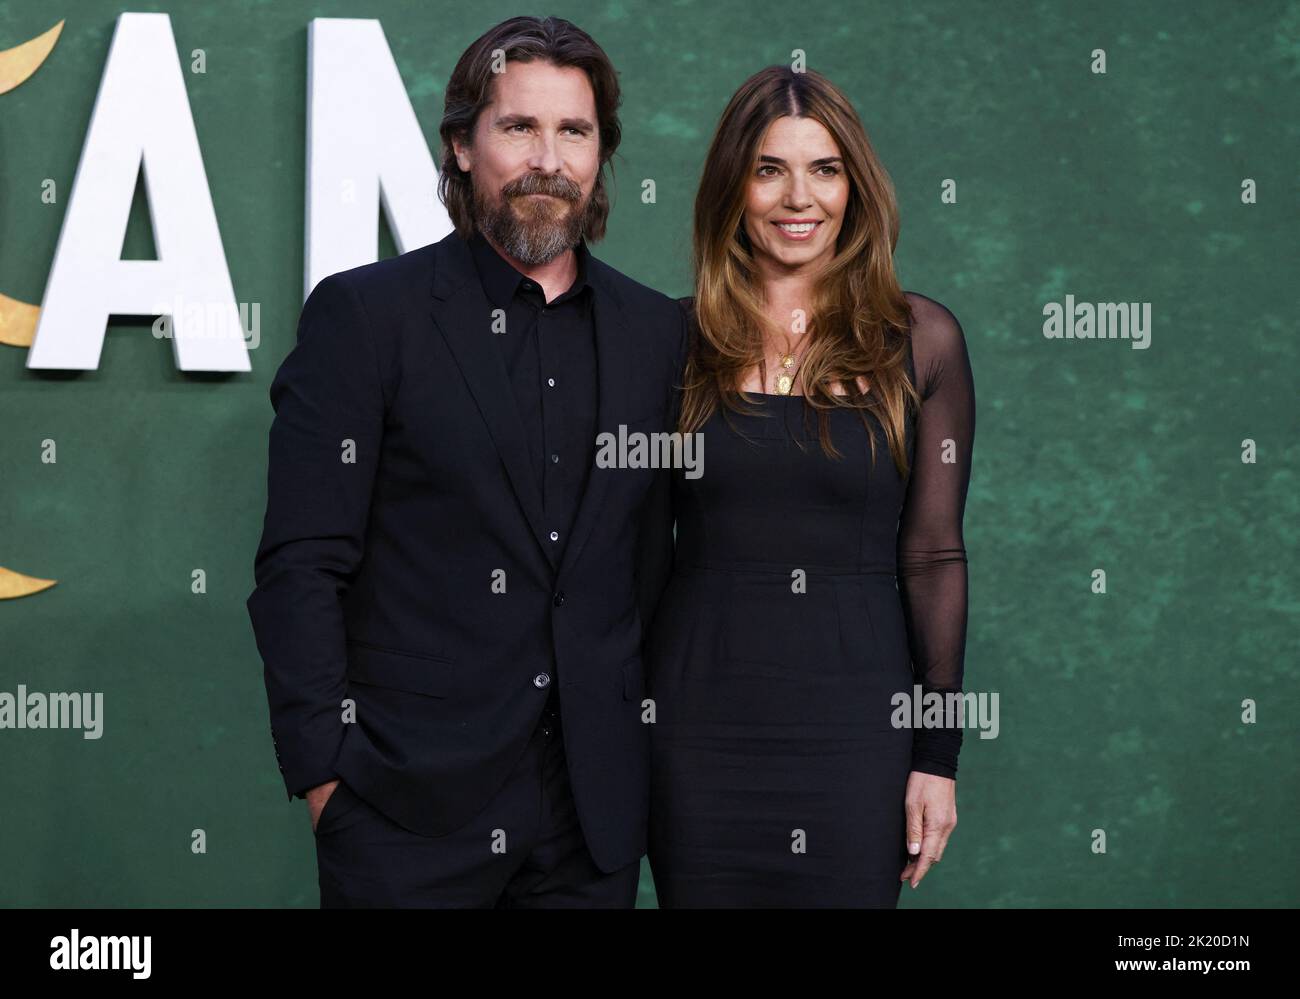 Il cast Christian Bale con la moglie sibi Blazic partecipa alla prima europea del film 'Amsterdam', a Londra, Gran Bretagna 21 settembre 2022. REUTERS/Tom Nicholson Foto Stock